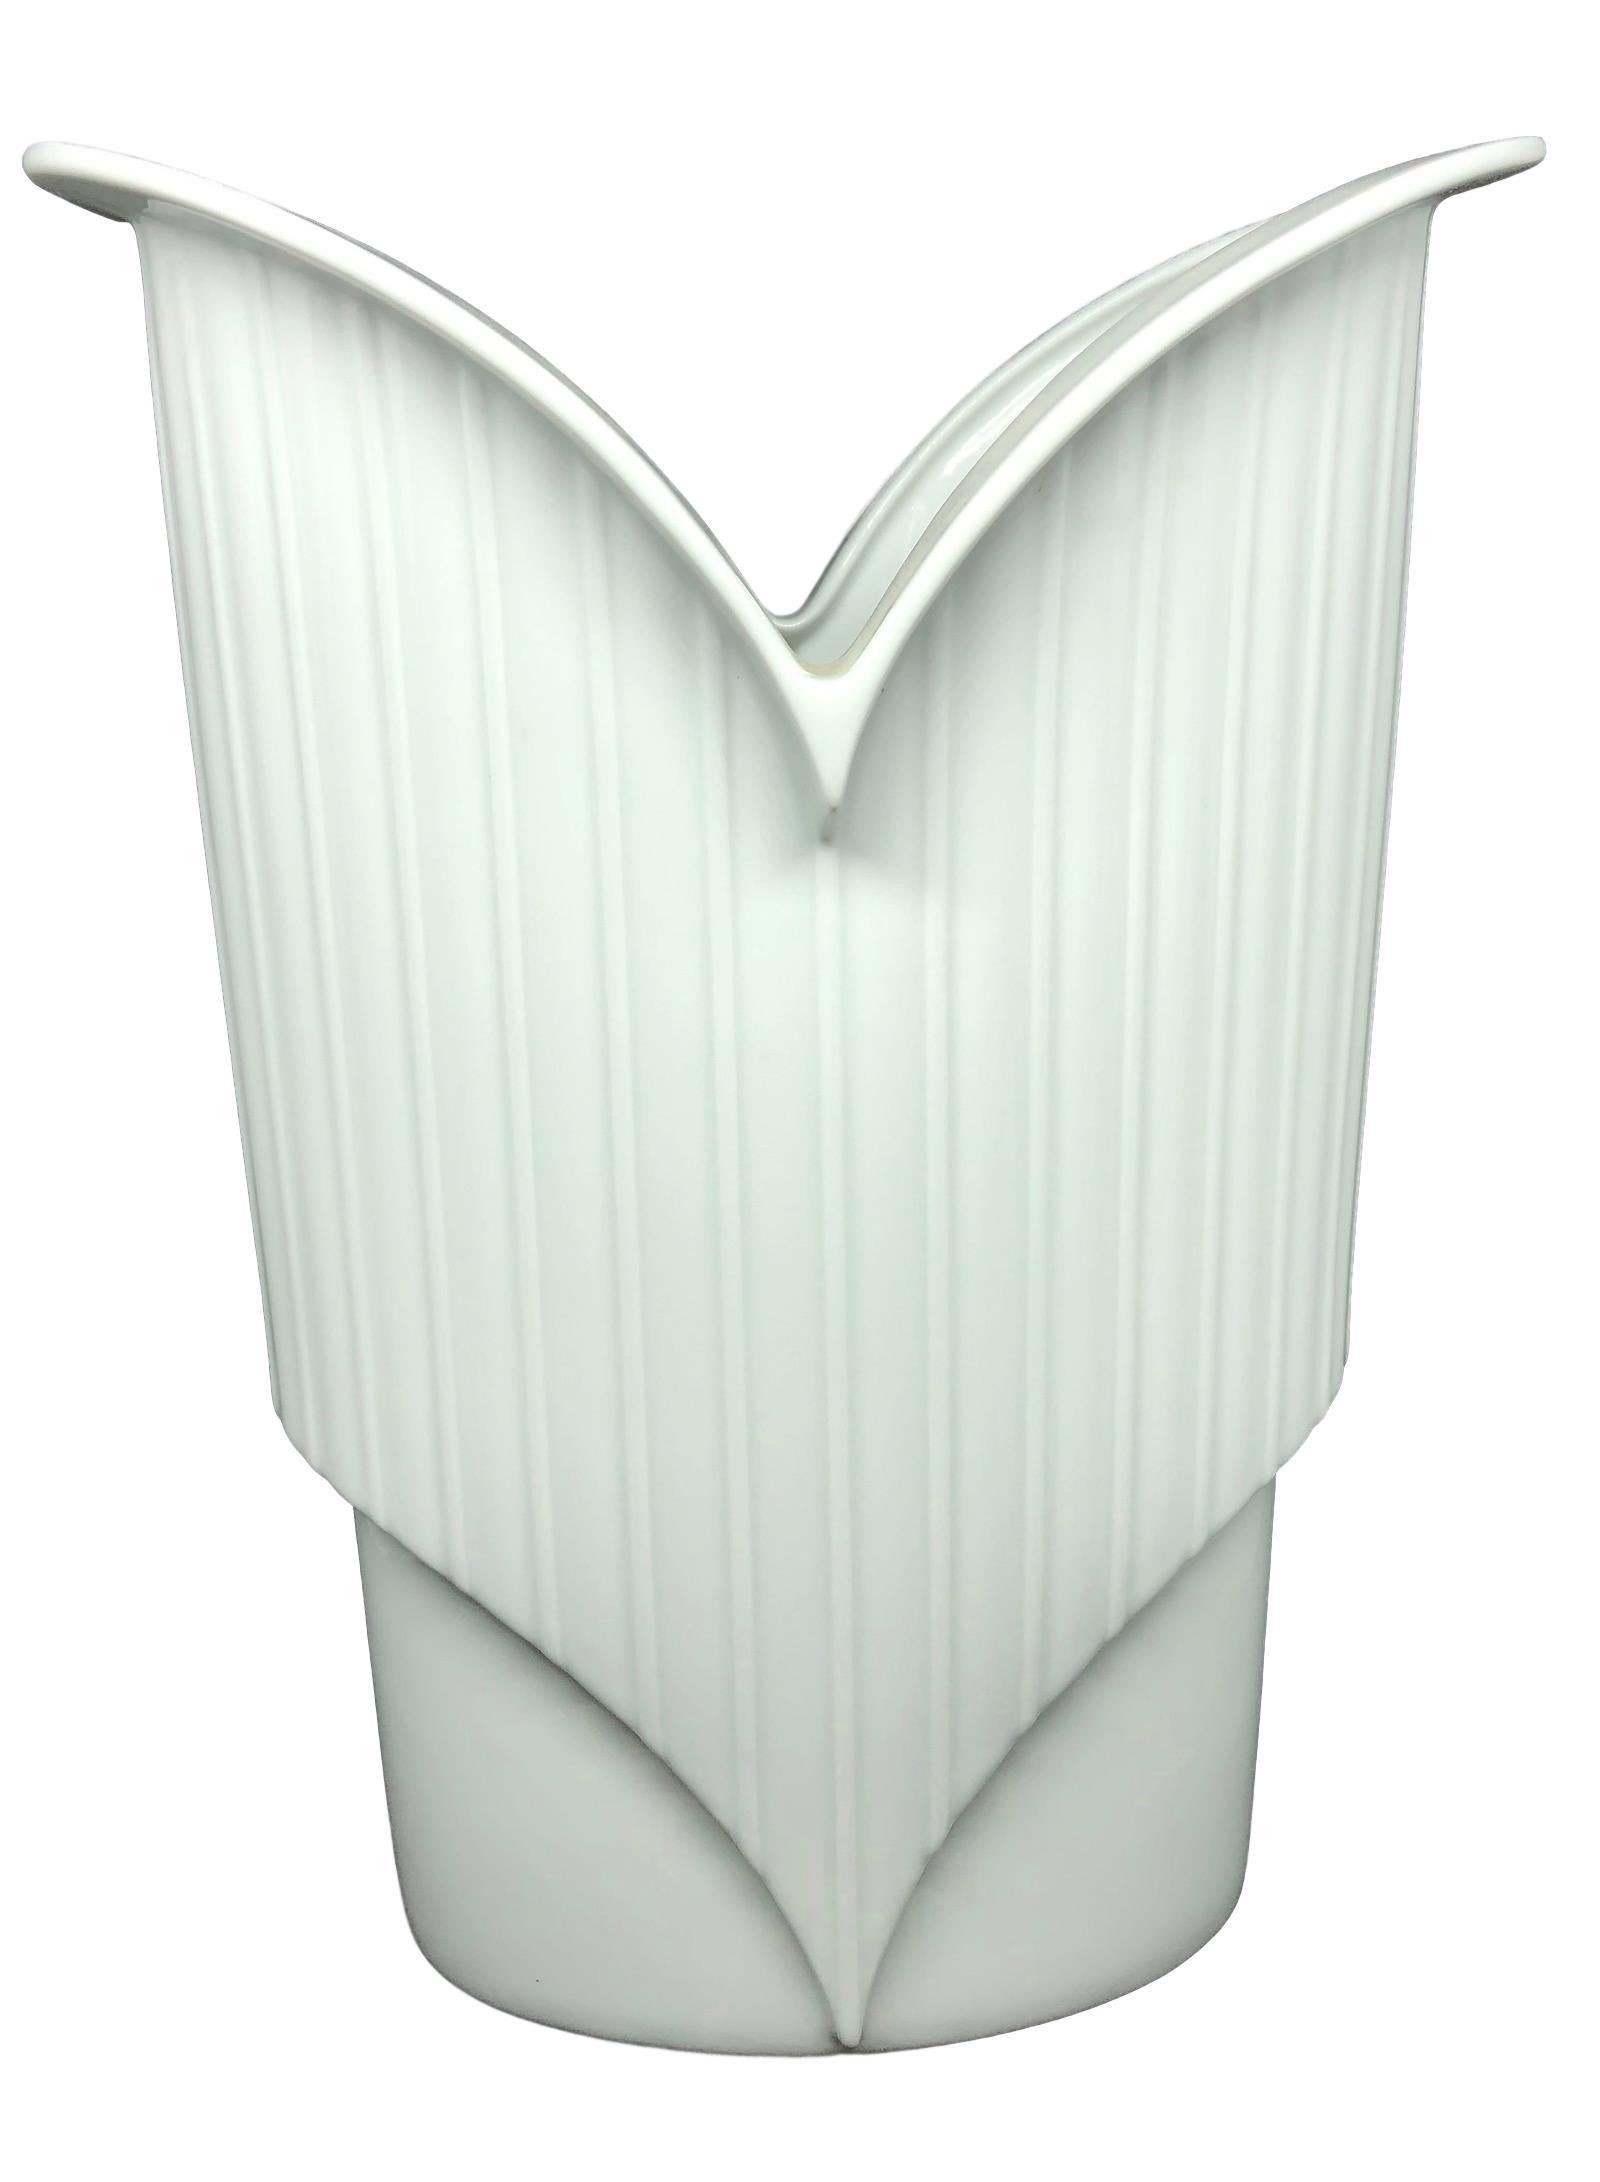 German White China Porcelain Vase by Jan van der Vaart for Rosenthal For Sale